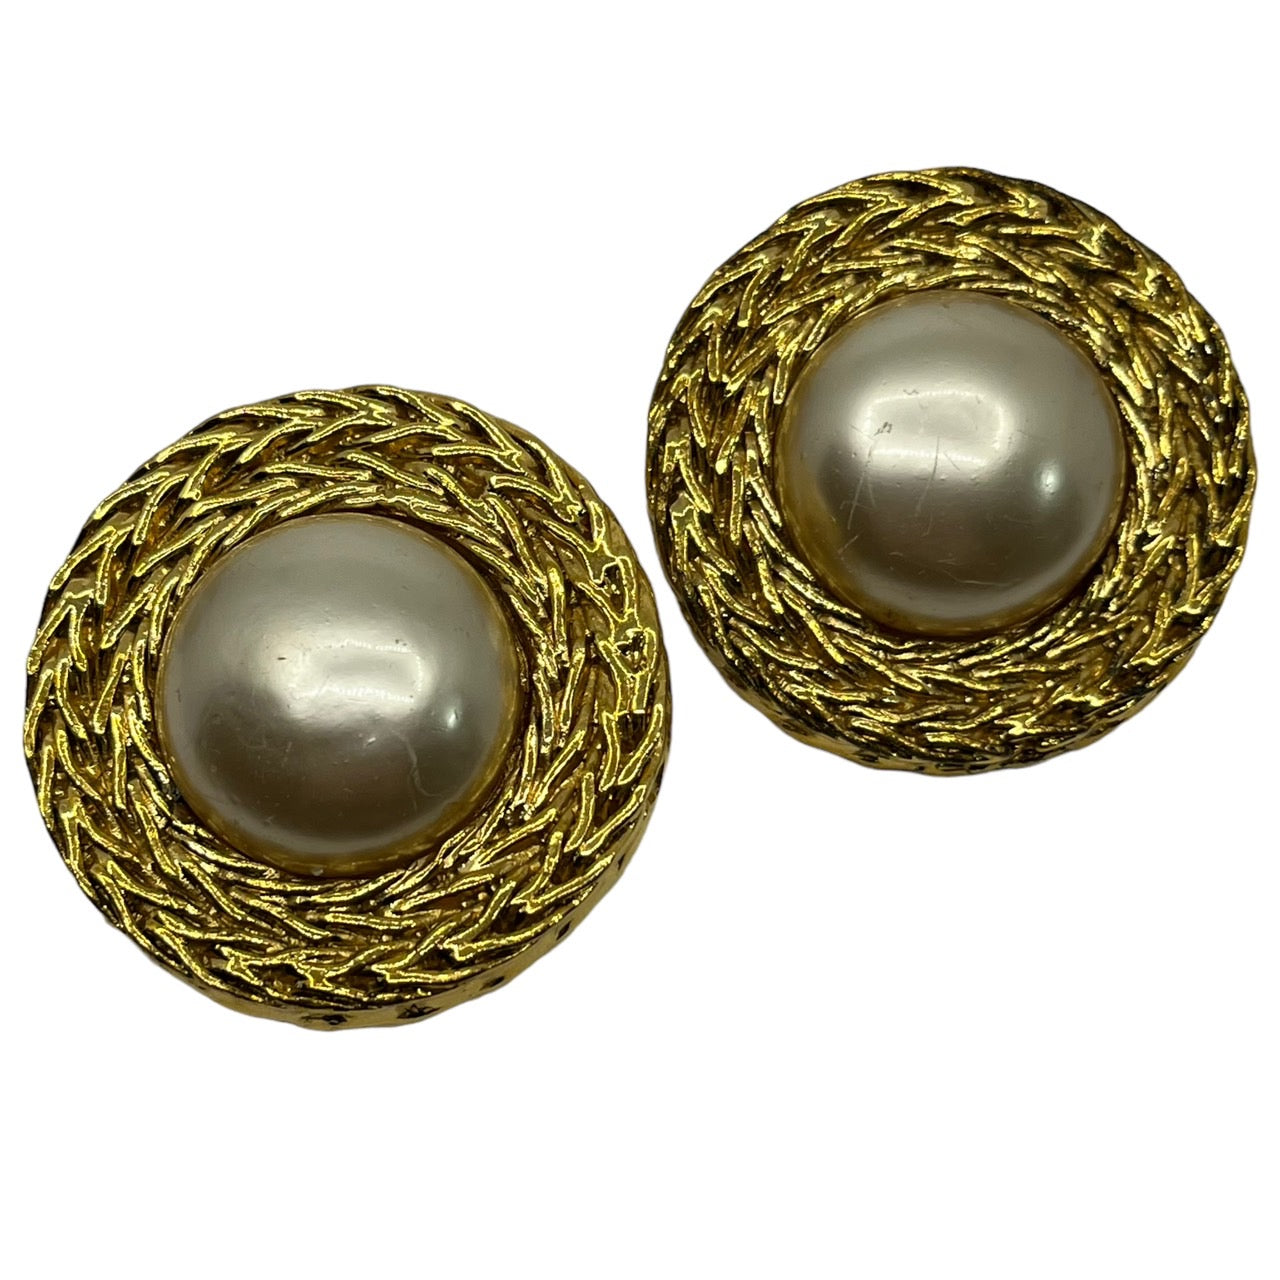 CHANEL(シャネル) 1990's vintage pearl gold earrings/ヴィンテージビッグパールゴールドイヤリング ゴールド  刻印2 5　ヴィクトワール・ドゥ・カステラーヌののデザイン